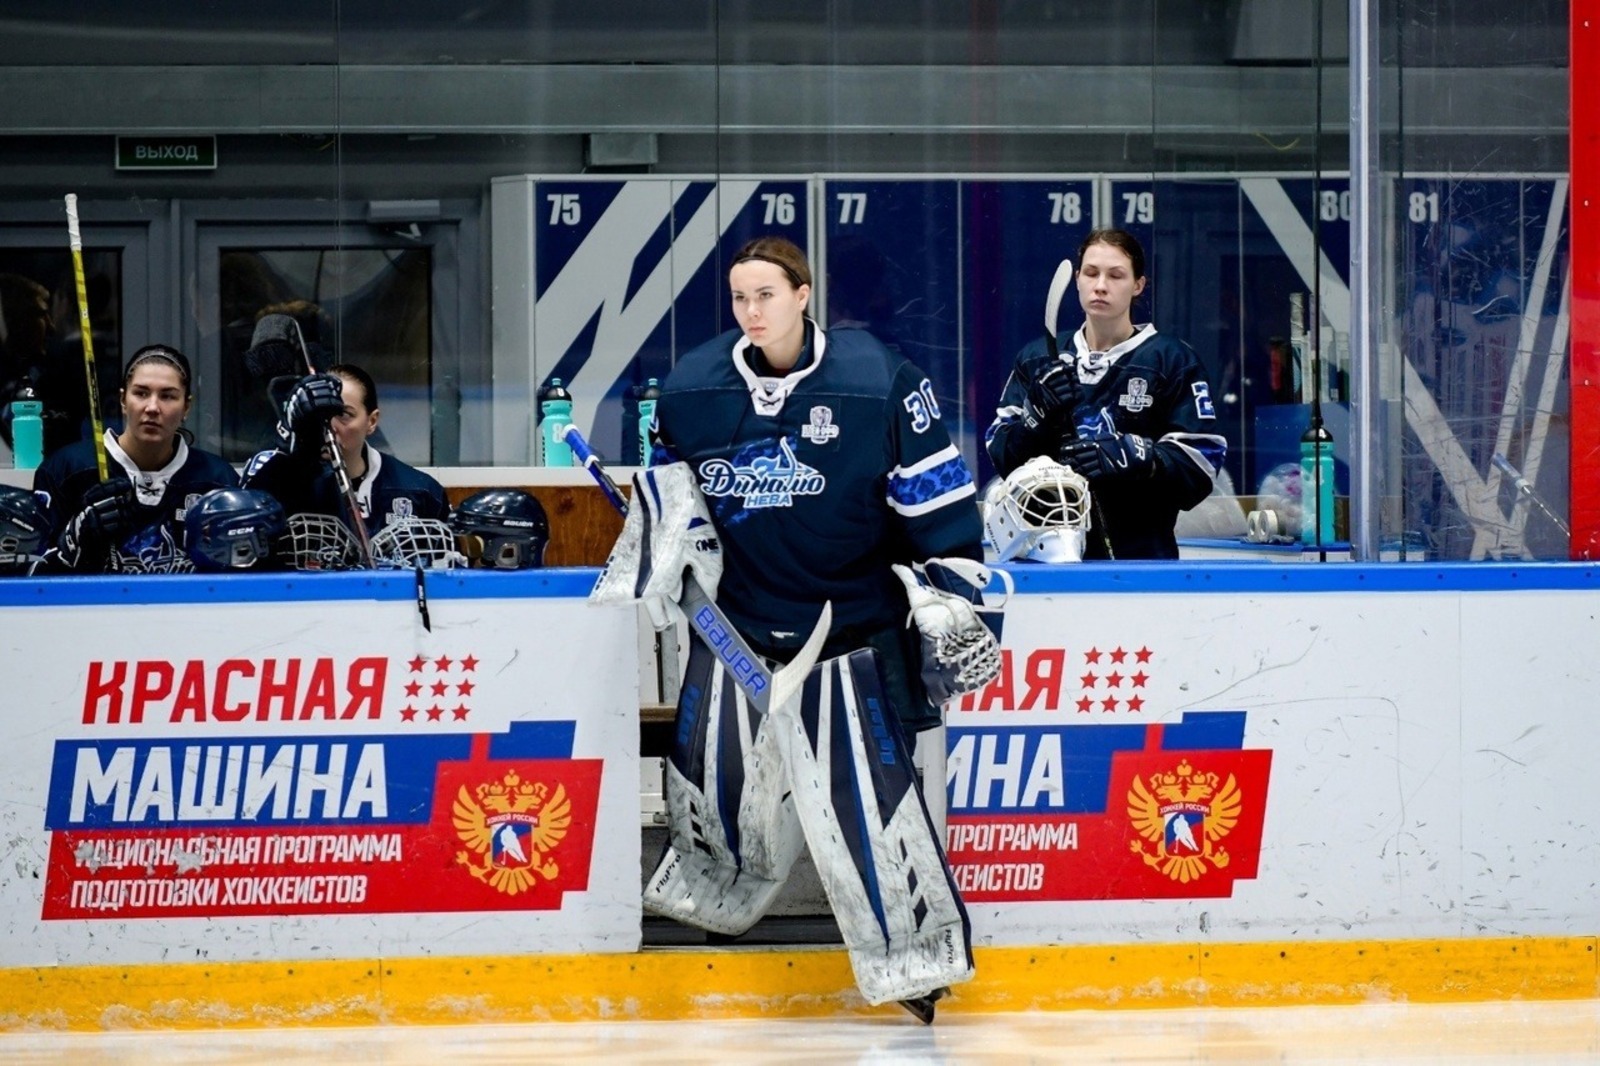 Уроженка Башкирии стала чемпионкой России по хоккею